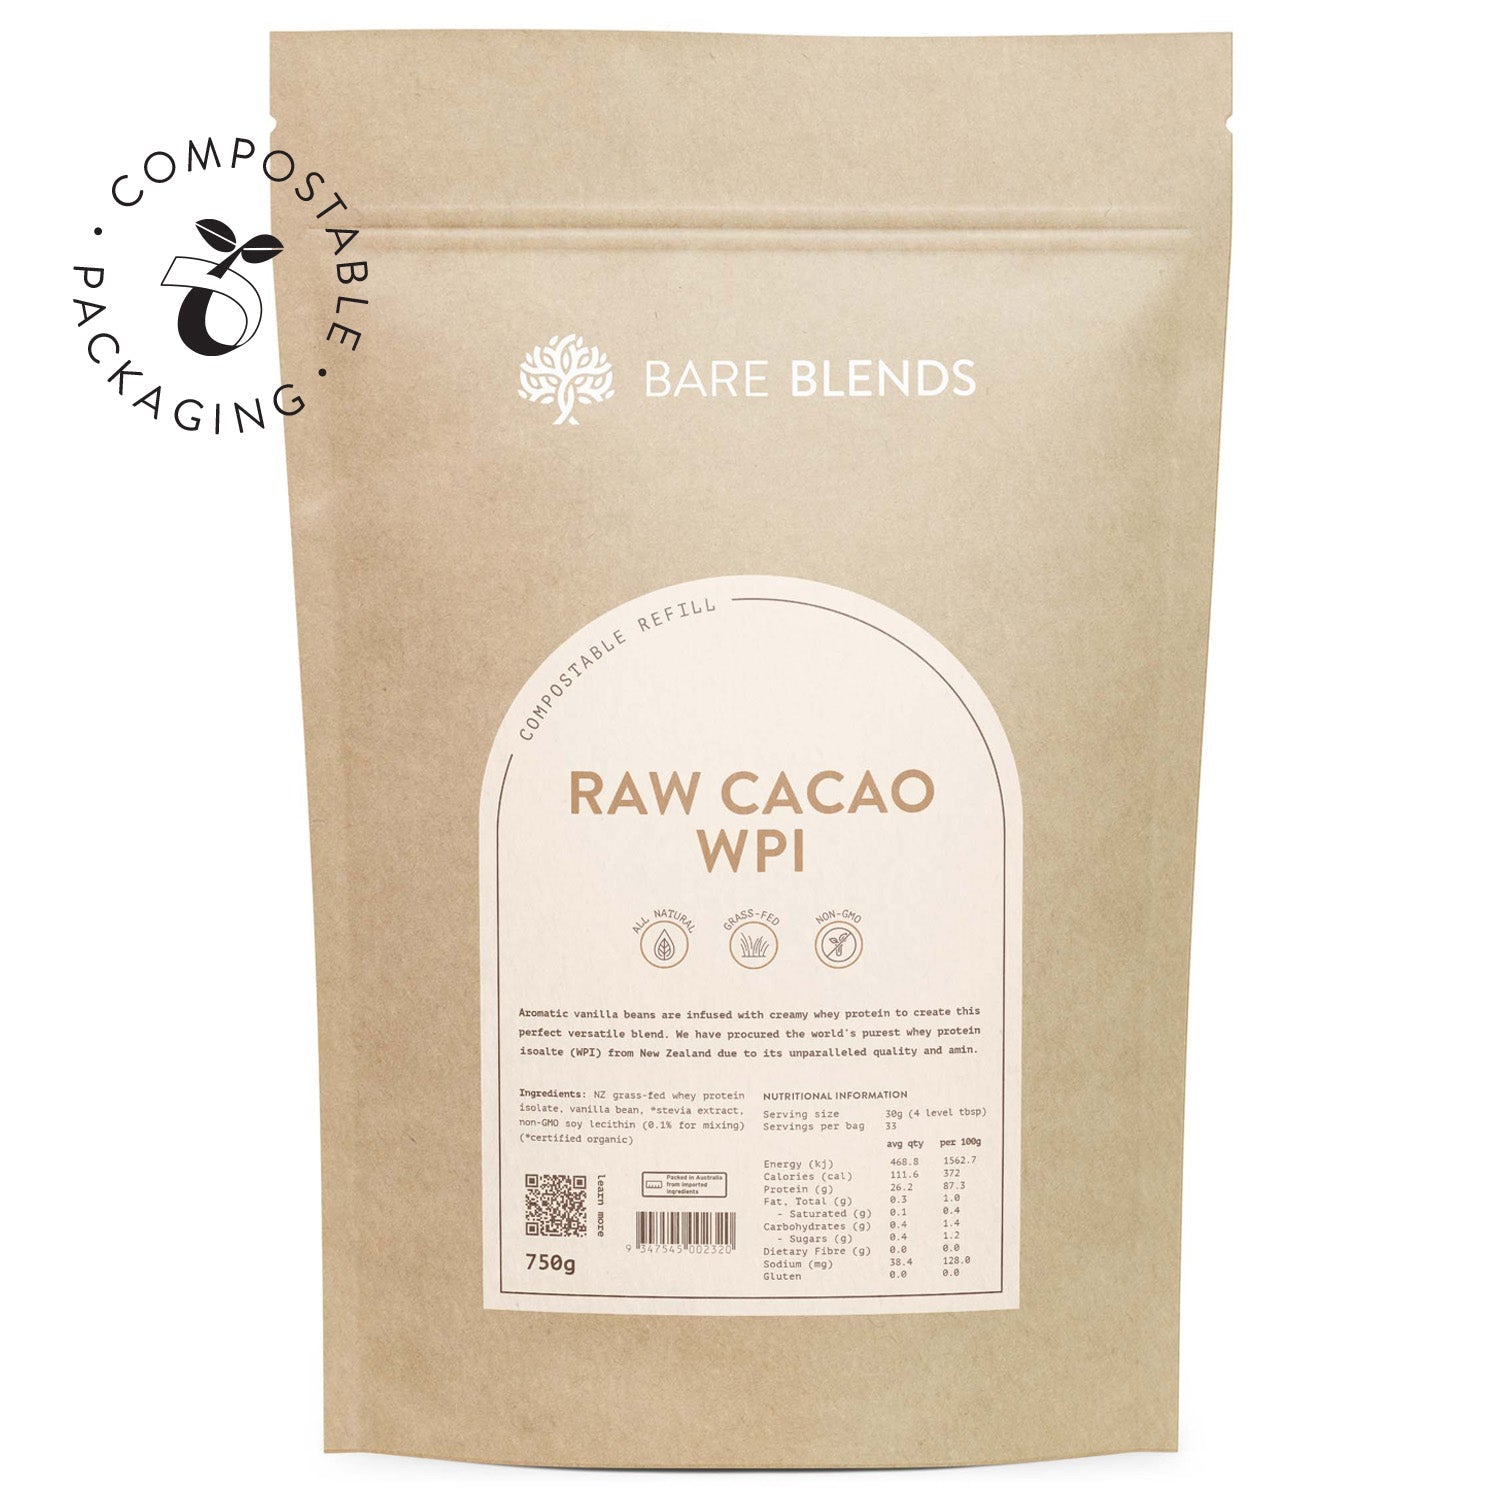 Bare Blends Raw Cacao WPI - Super Nutrition